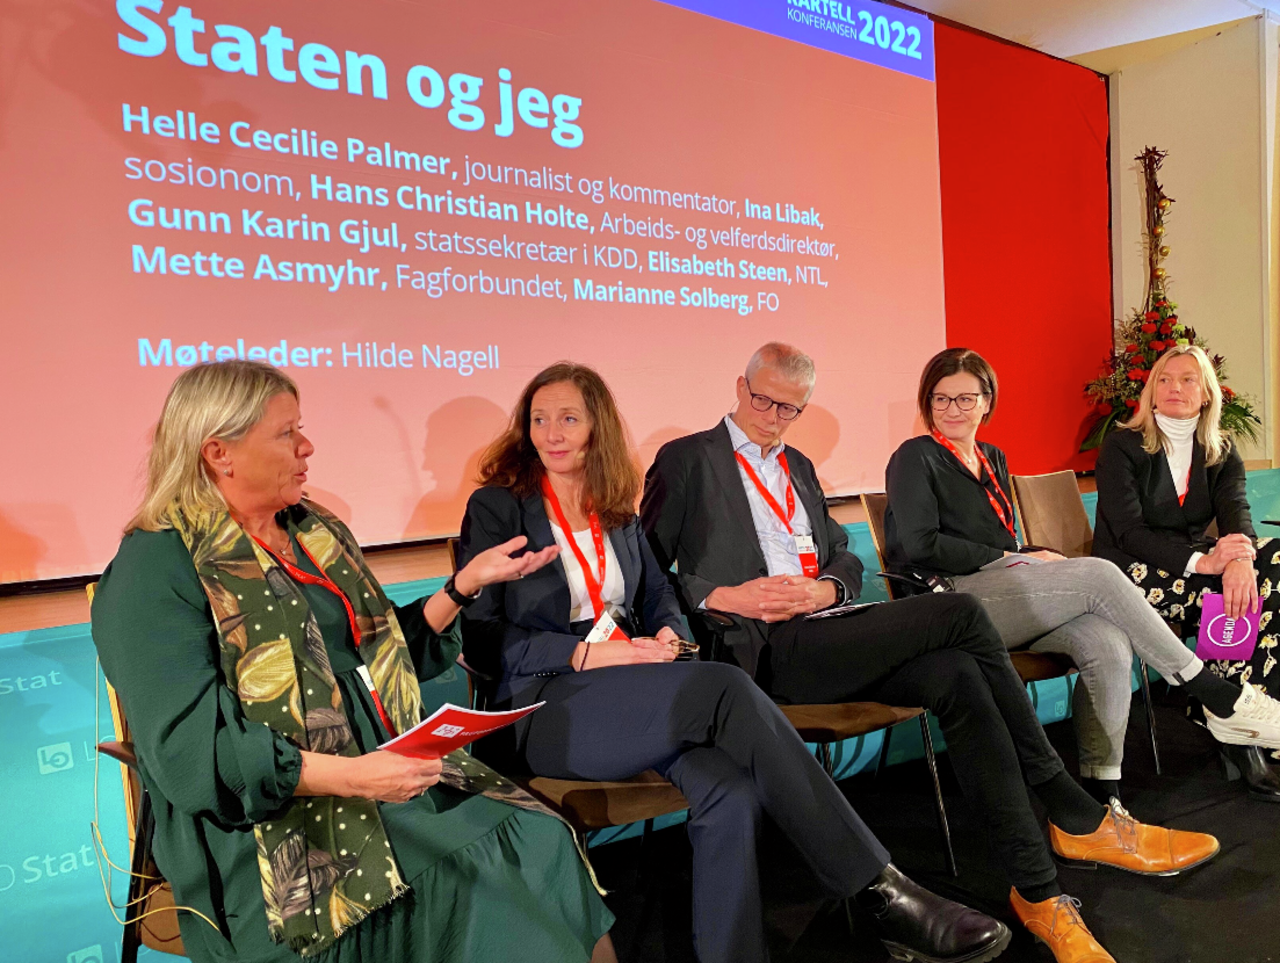 Fra høyre: Hilde Nagel (møteleder), Marianne Solberg (FO), Hans Christian Holte (arbeids- og velferdsdirektør), Gunn Karin Gjul (statssekretær KMD) og Mette Asmyhr (Fagforbundet)